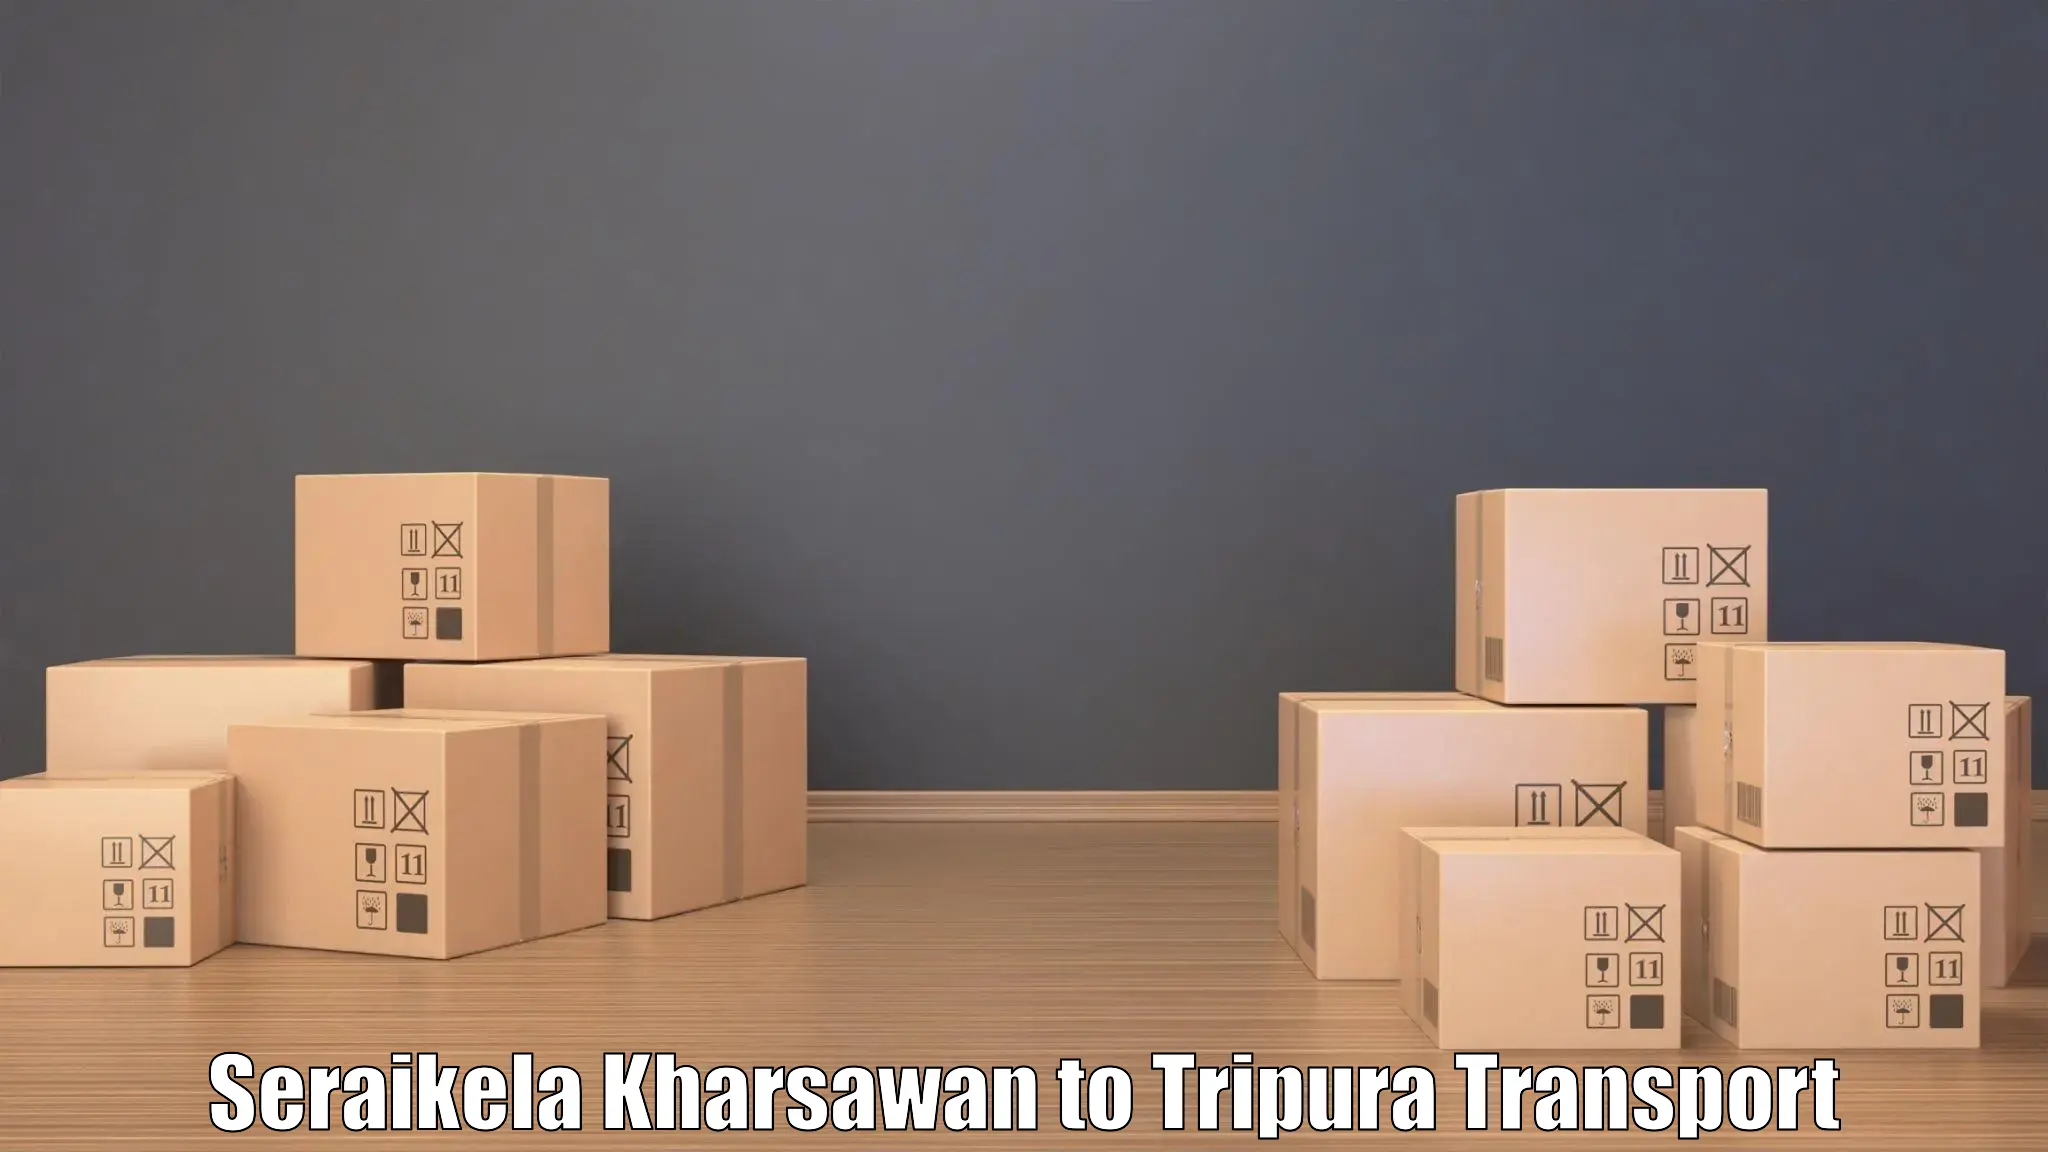 Transport in sharing Seraikela Kharsawan to Manughat